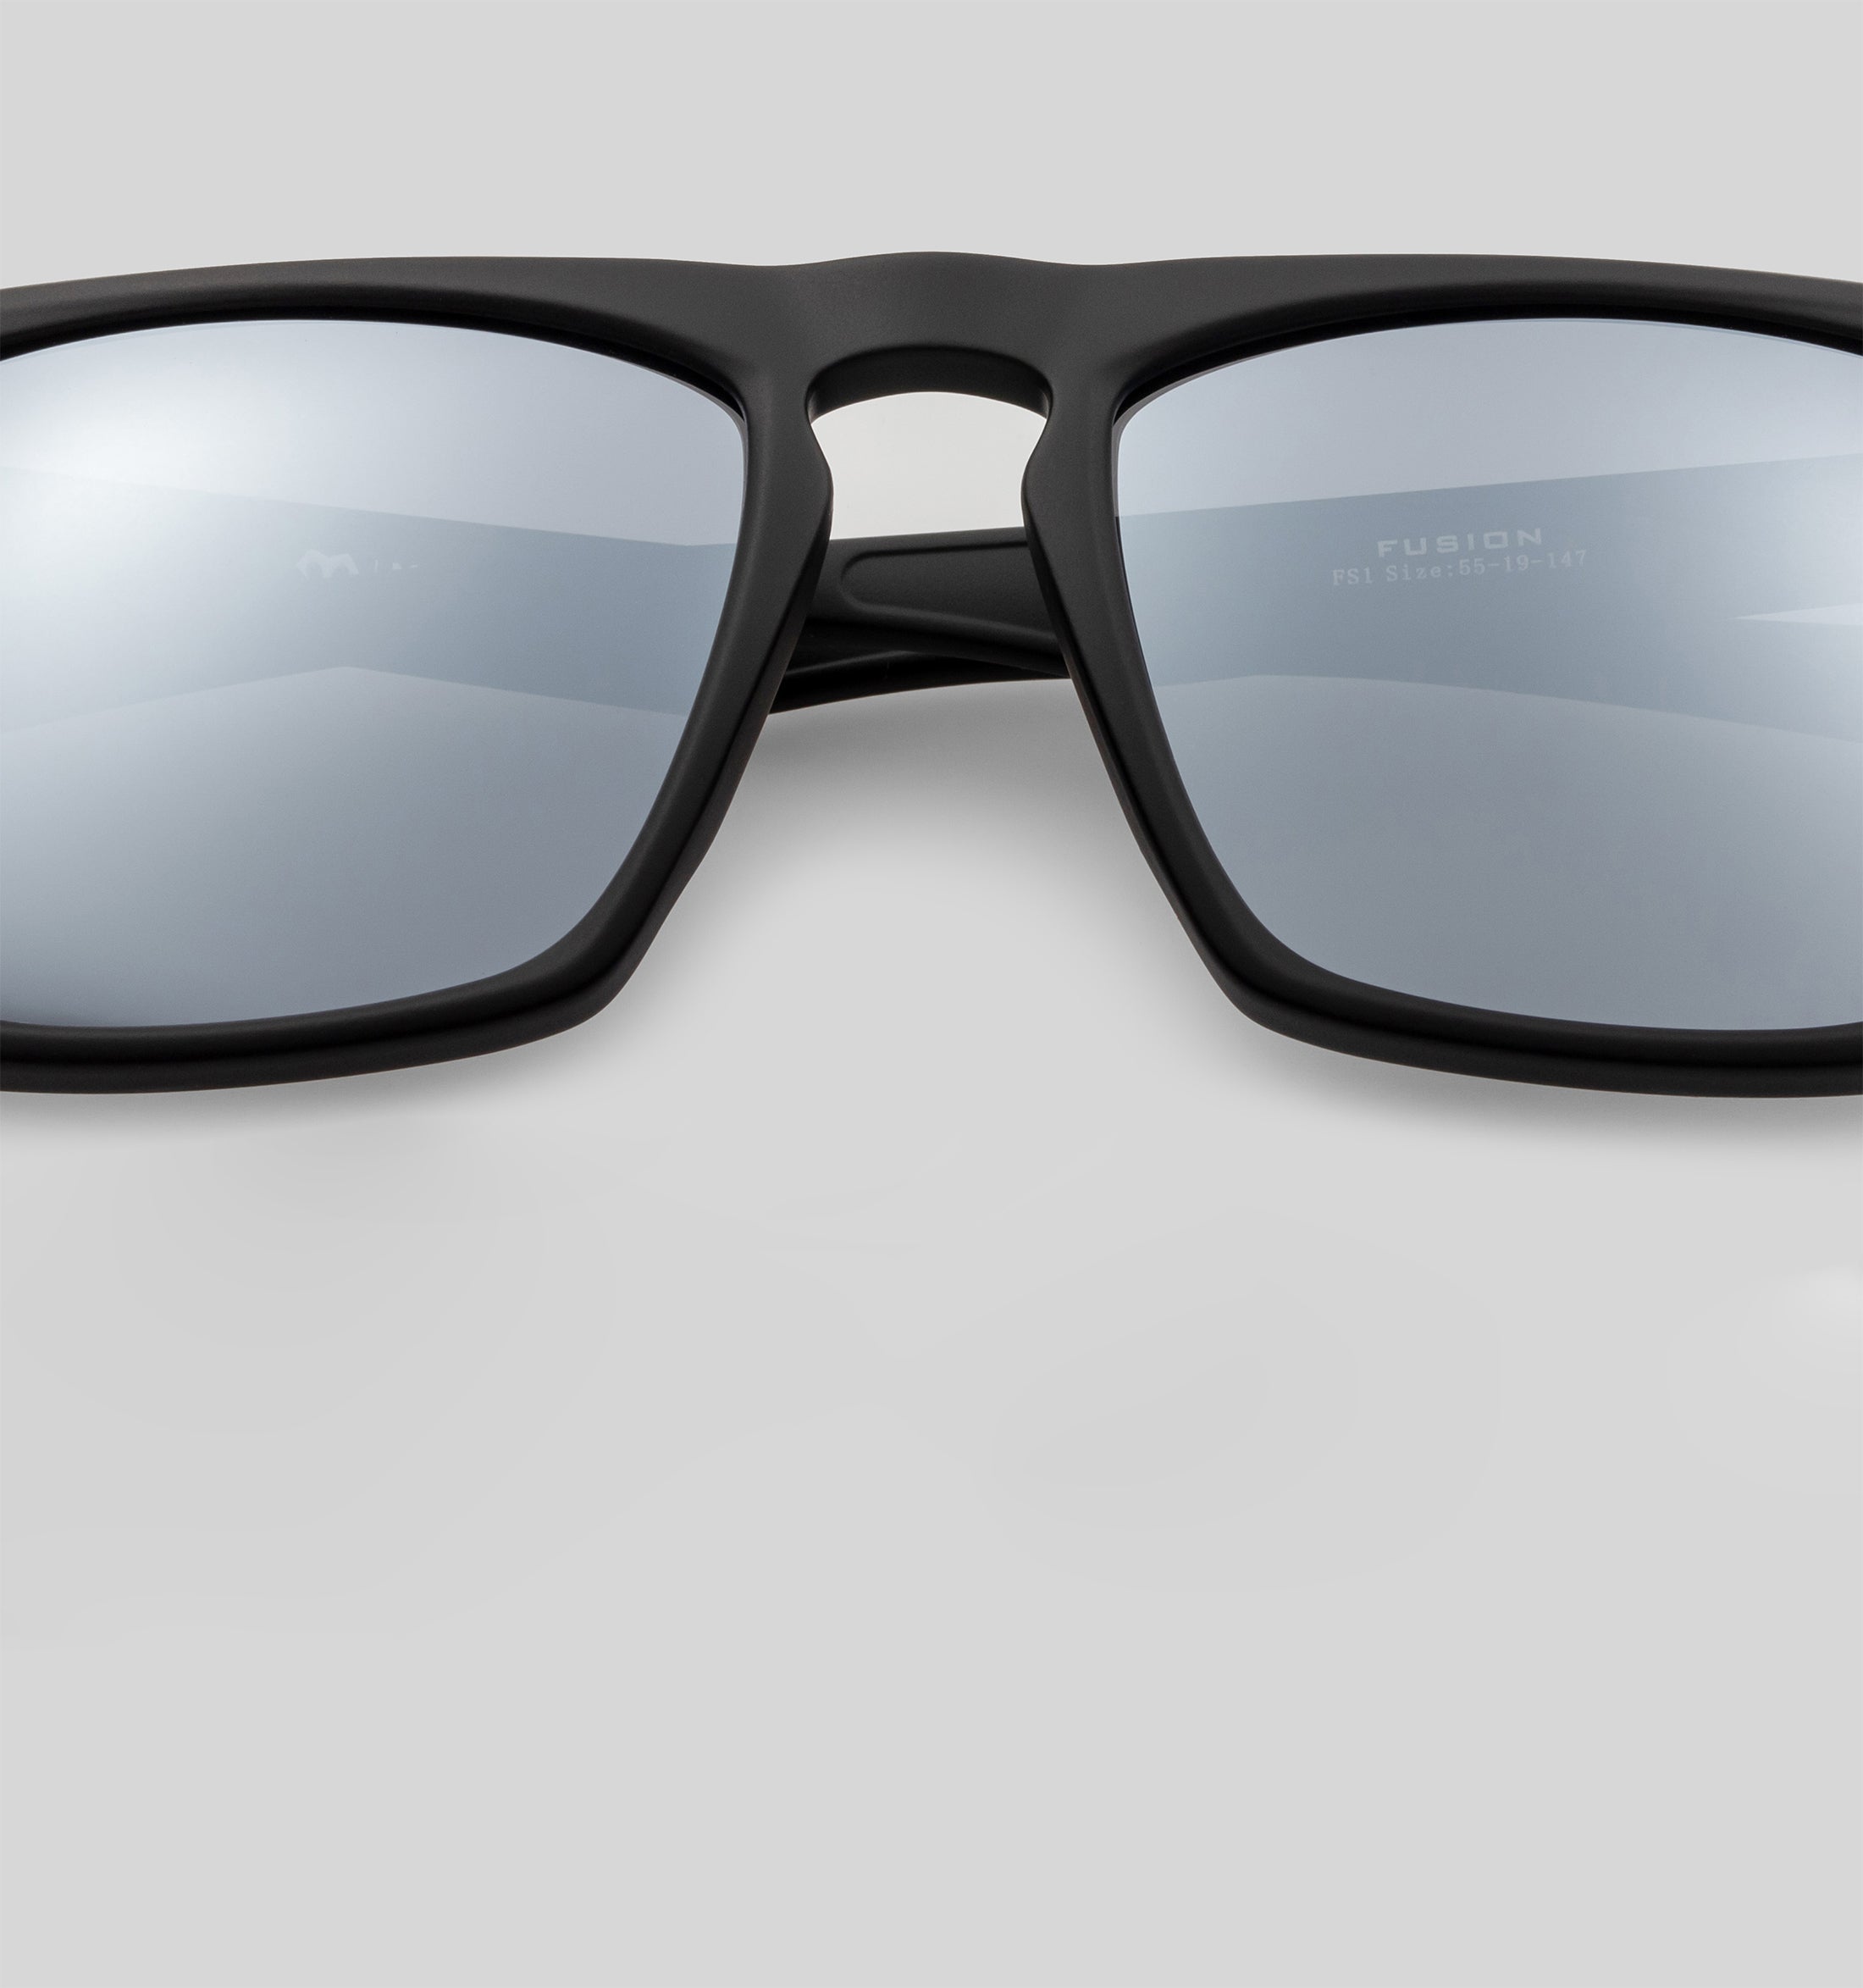 Fusion - Polarized Square Sunglasses for Men & Women | MarsQuest